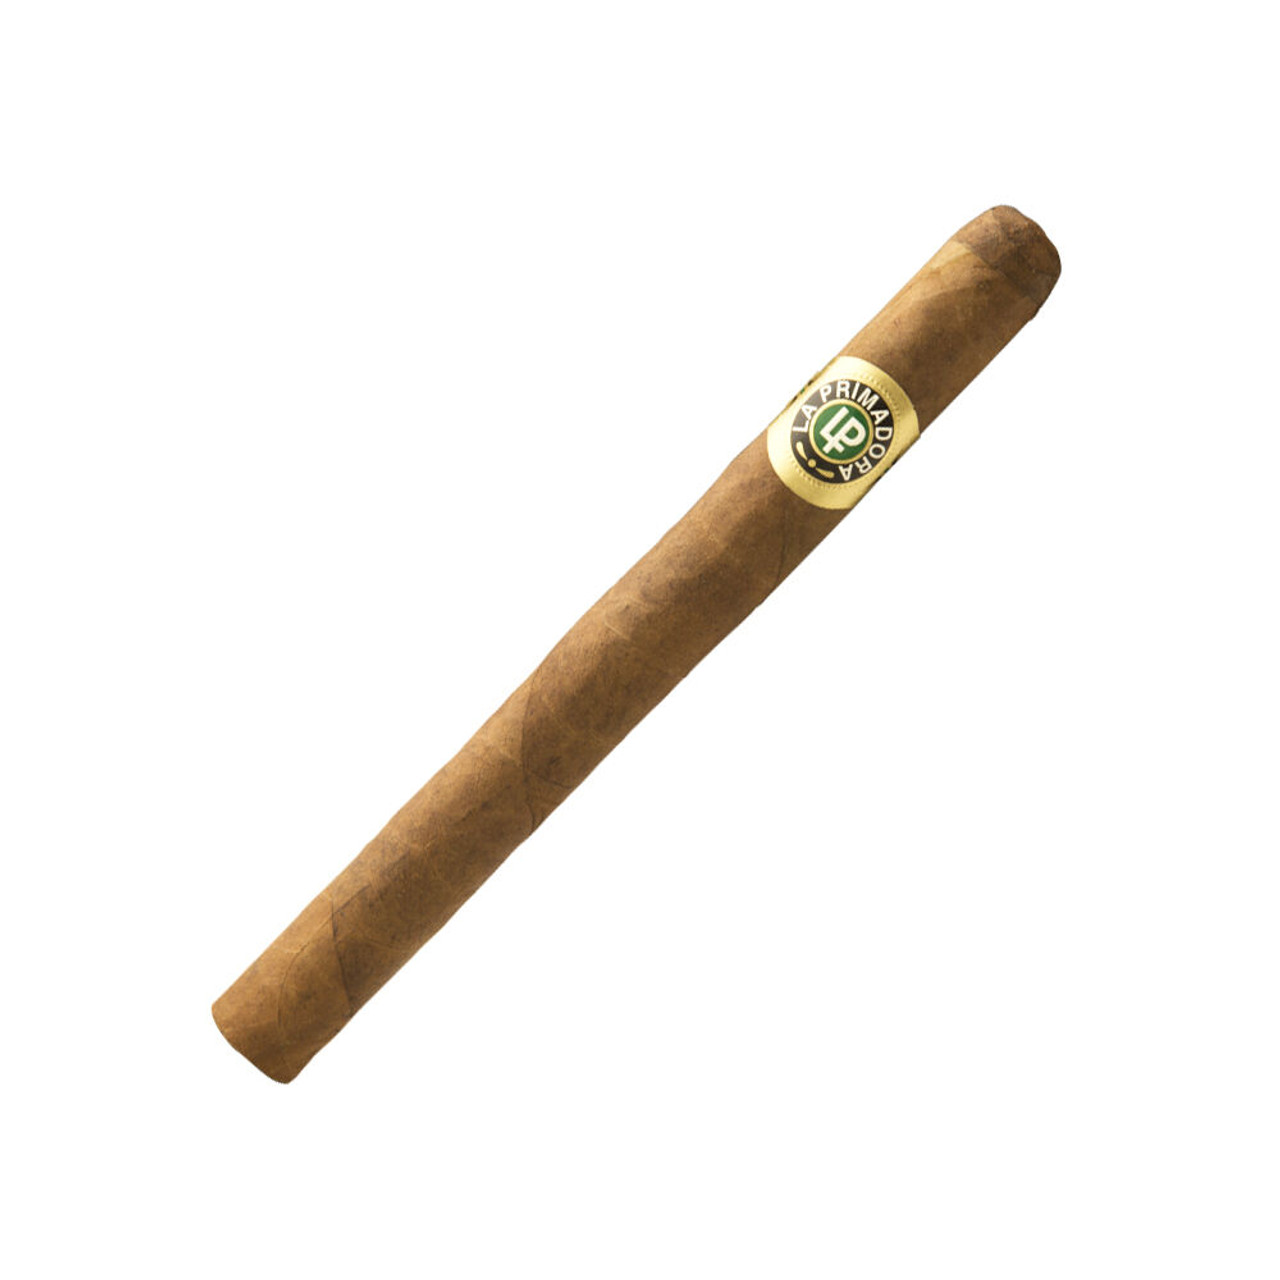 La Primadora Excellente Natural Cigars - 6.5 x 42 Single